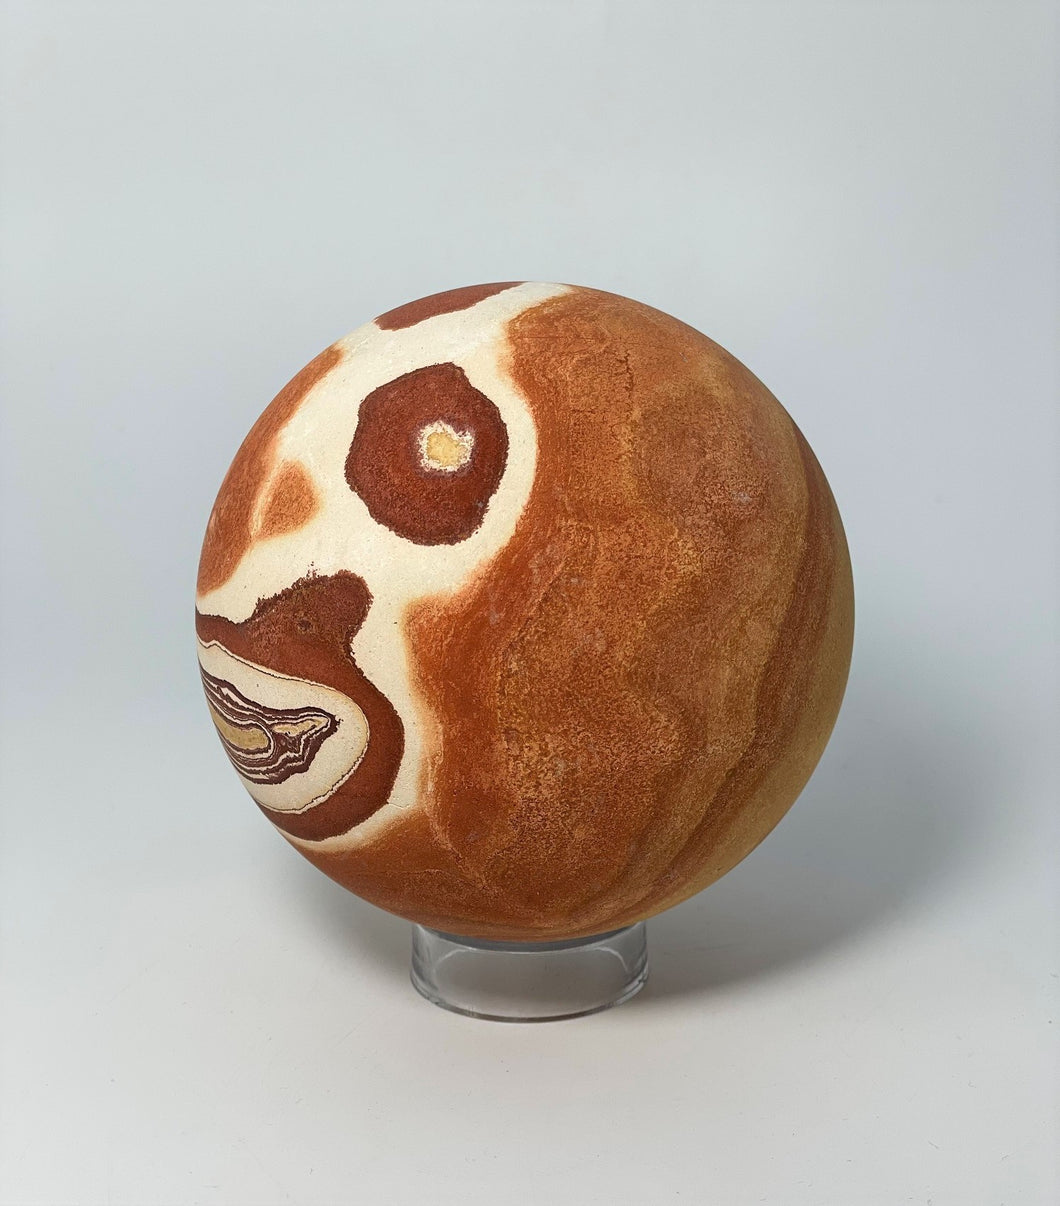 Sphere made from Wonderstone Rhyolite